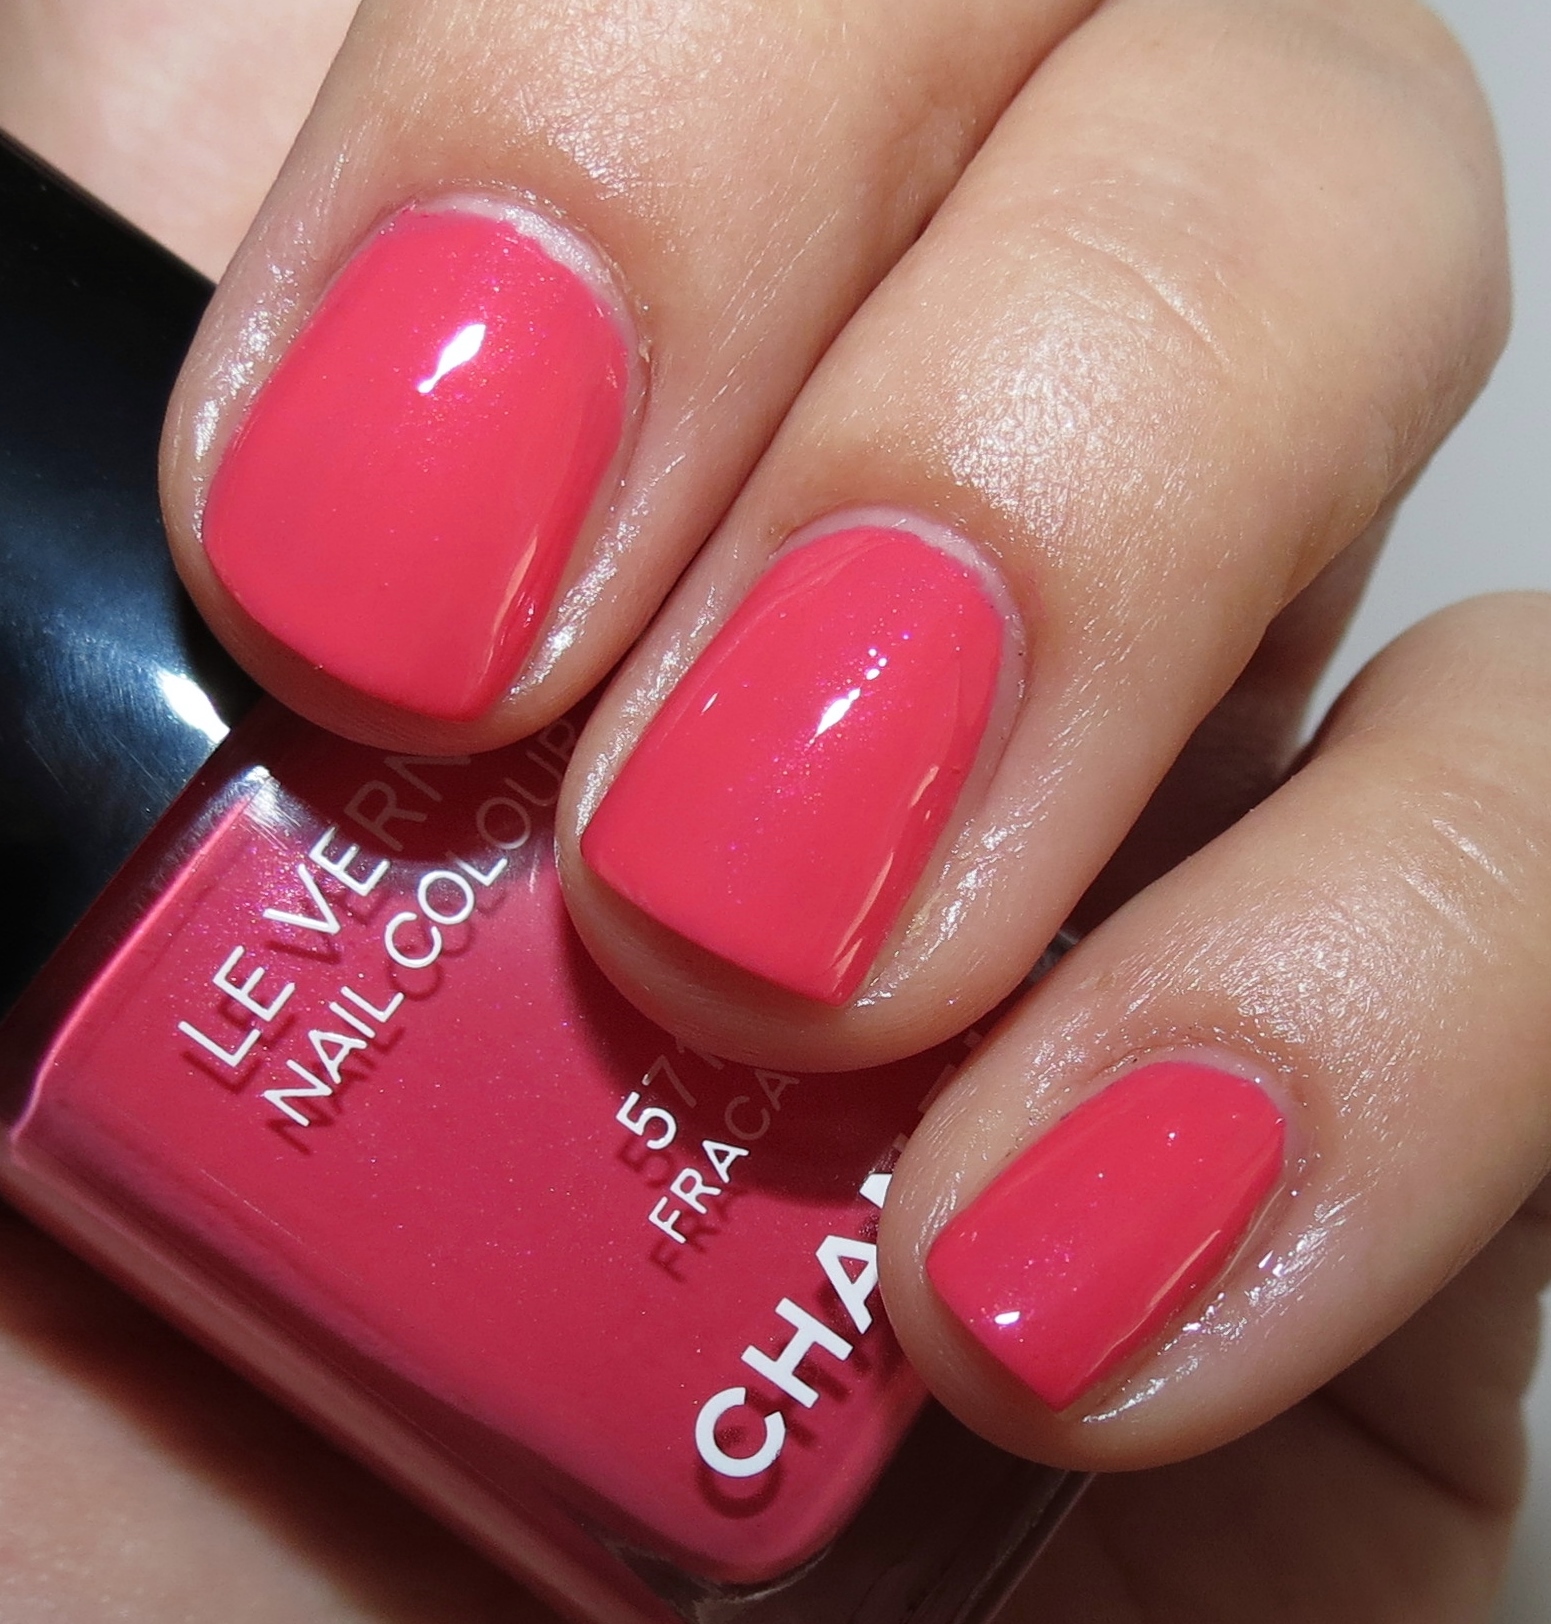 chanel nail polish pink